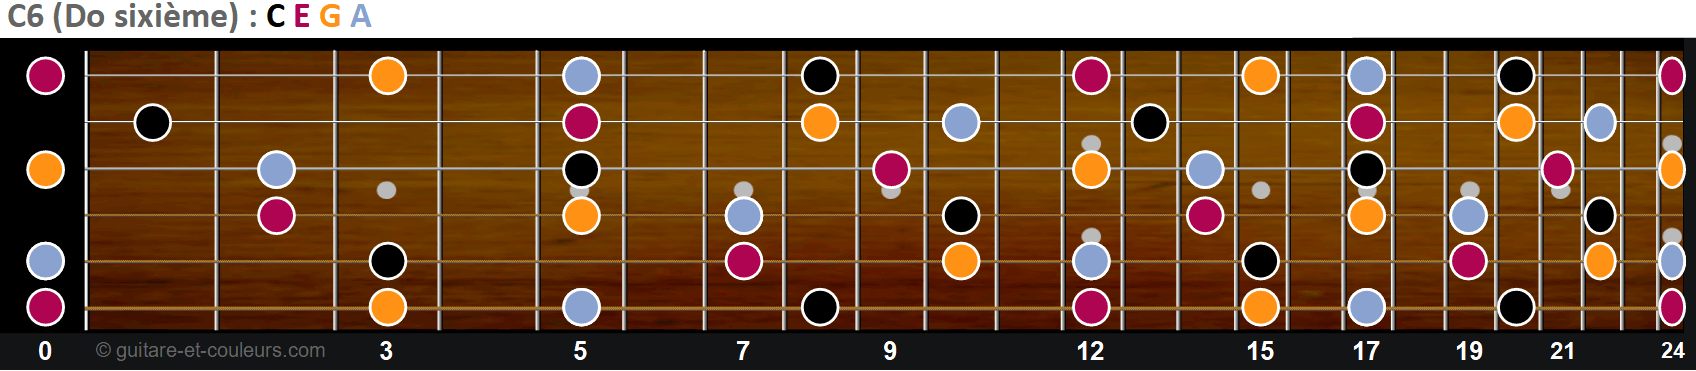 Toutes les notes de C6 sur un manche de guitare